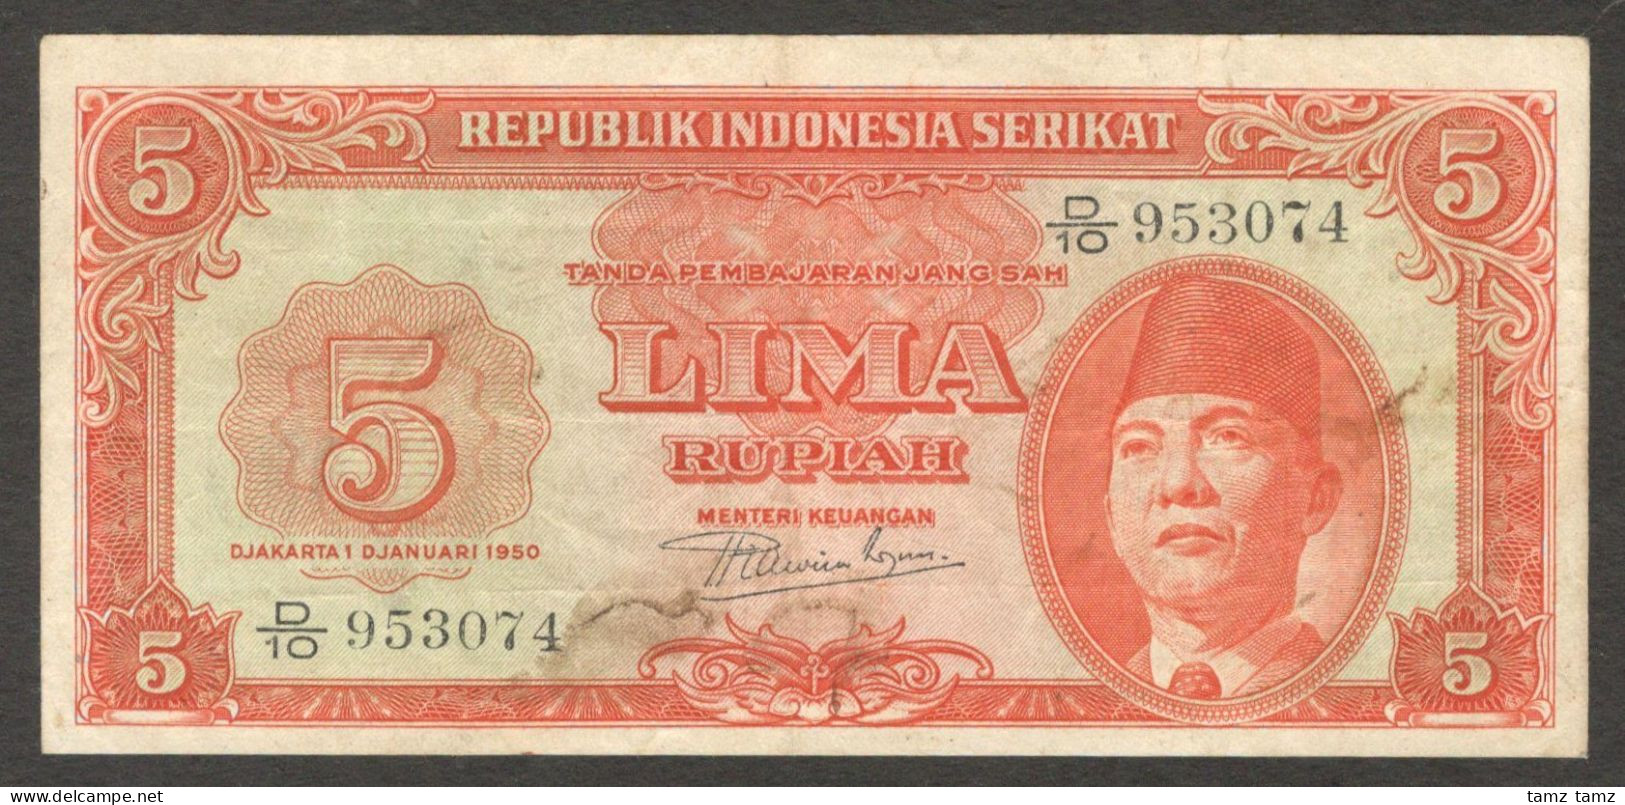 Republik Indonesia Serikat 5 Rupiah President Soekarno P-36 1950 VF - Indonesië